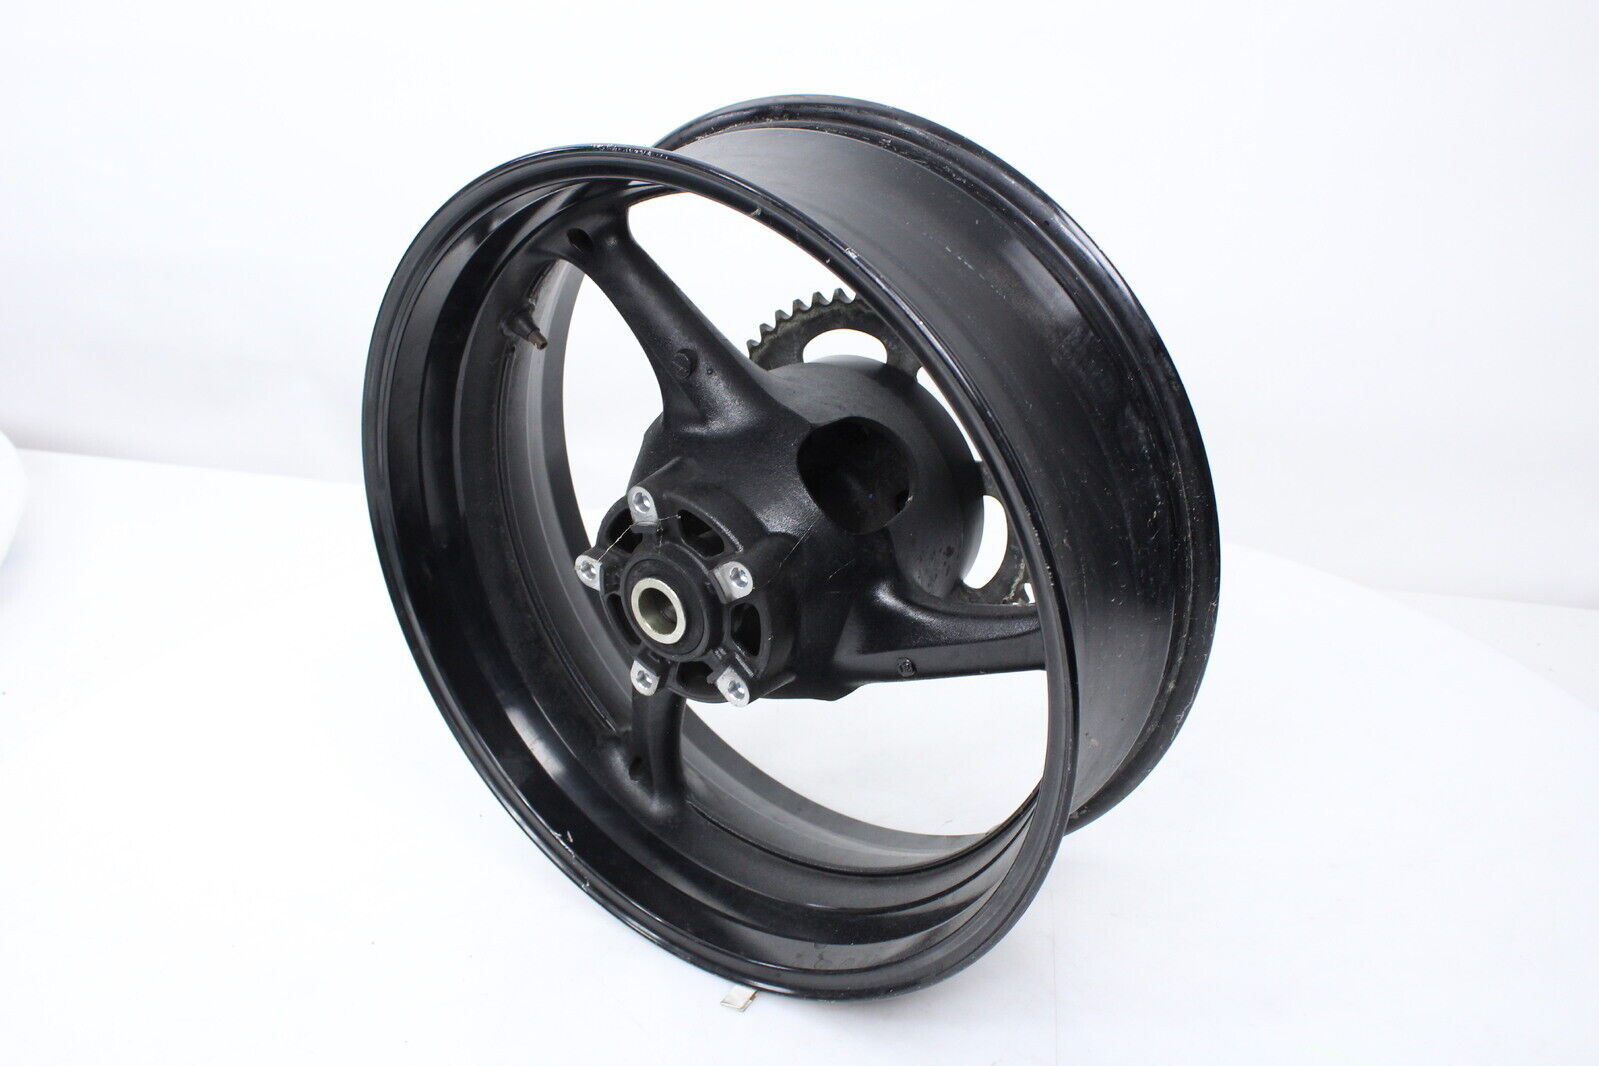 Rear Wheel Rim Hub Sprocket Suzuki GSXR600 11-20 OEM